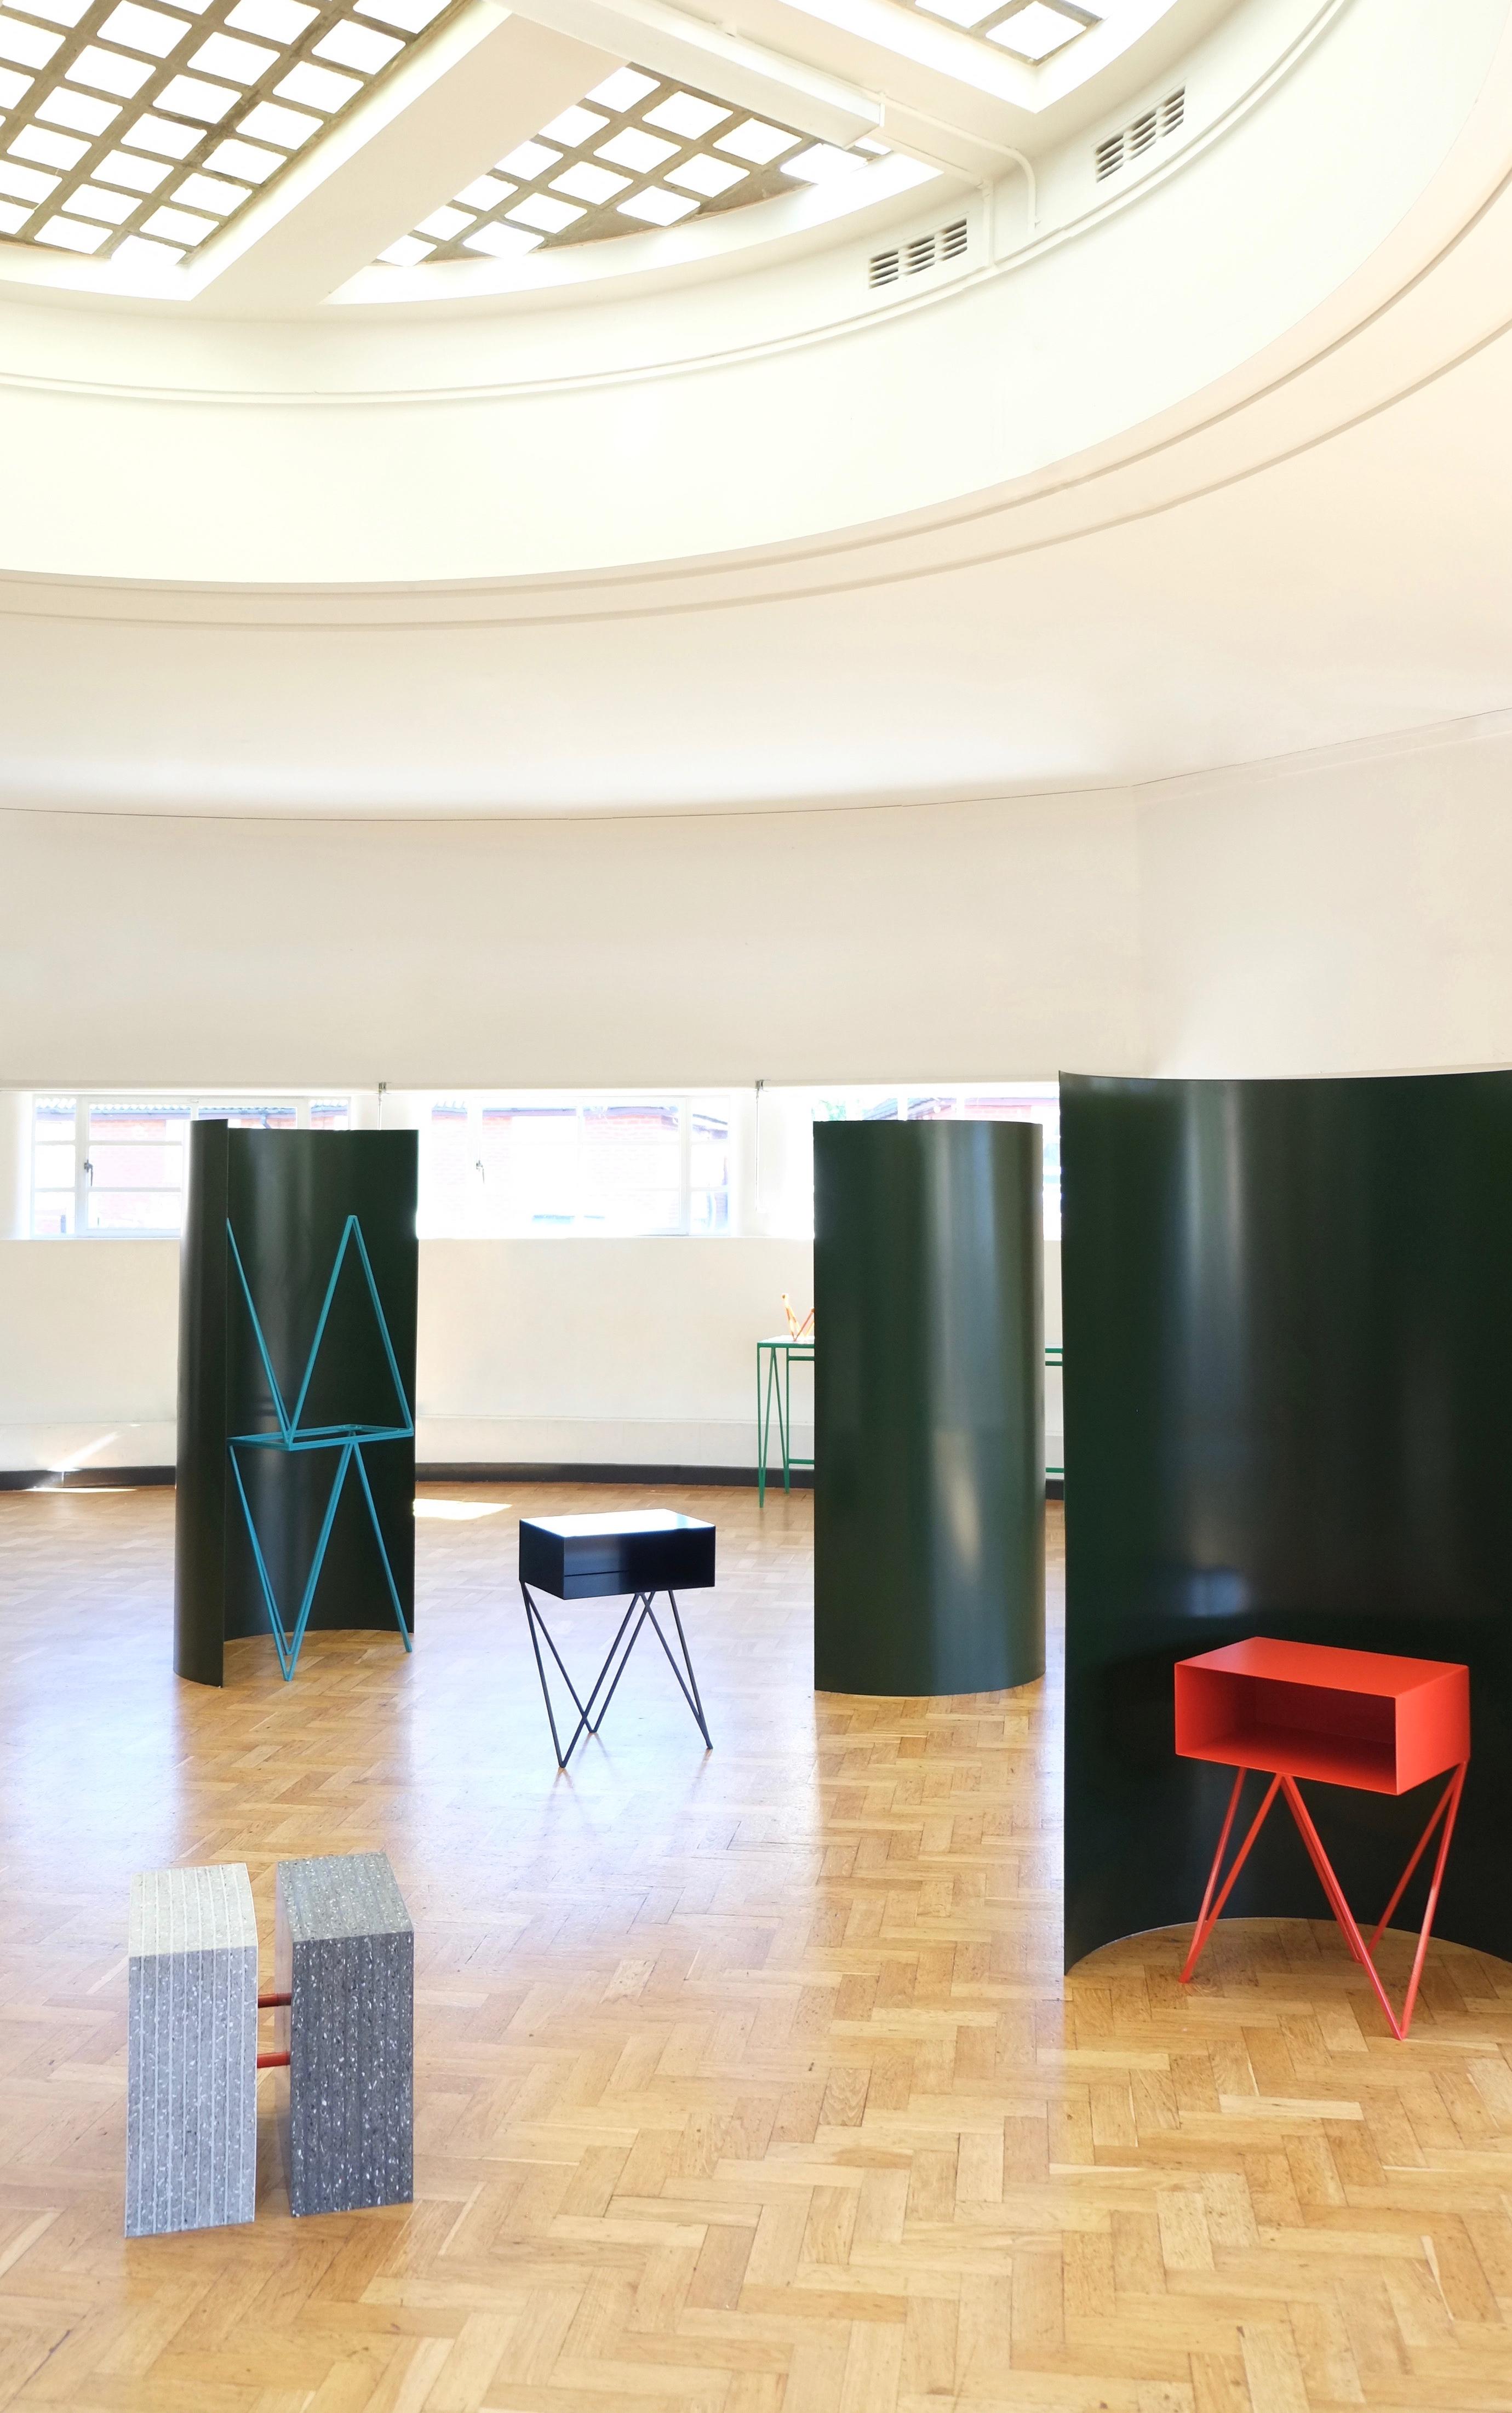 Der Gray Screen ist ein freistehender Raumteiler, benannt nach der ikonischen modernistischen Architektin und Designerin Eileen Gray, einer Liebhaberin von Paravents. Die großen Kurven aus pulverbeschichtetem Aluminium bringen eine Menge lebendiger